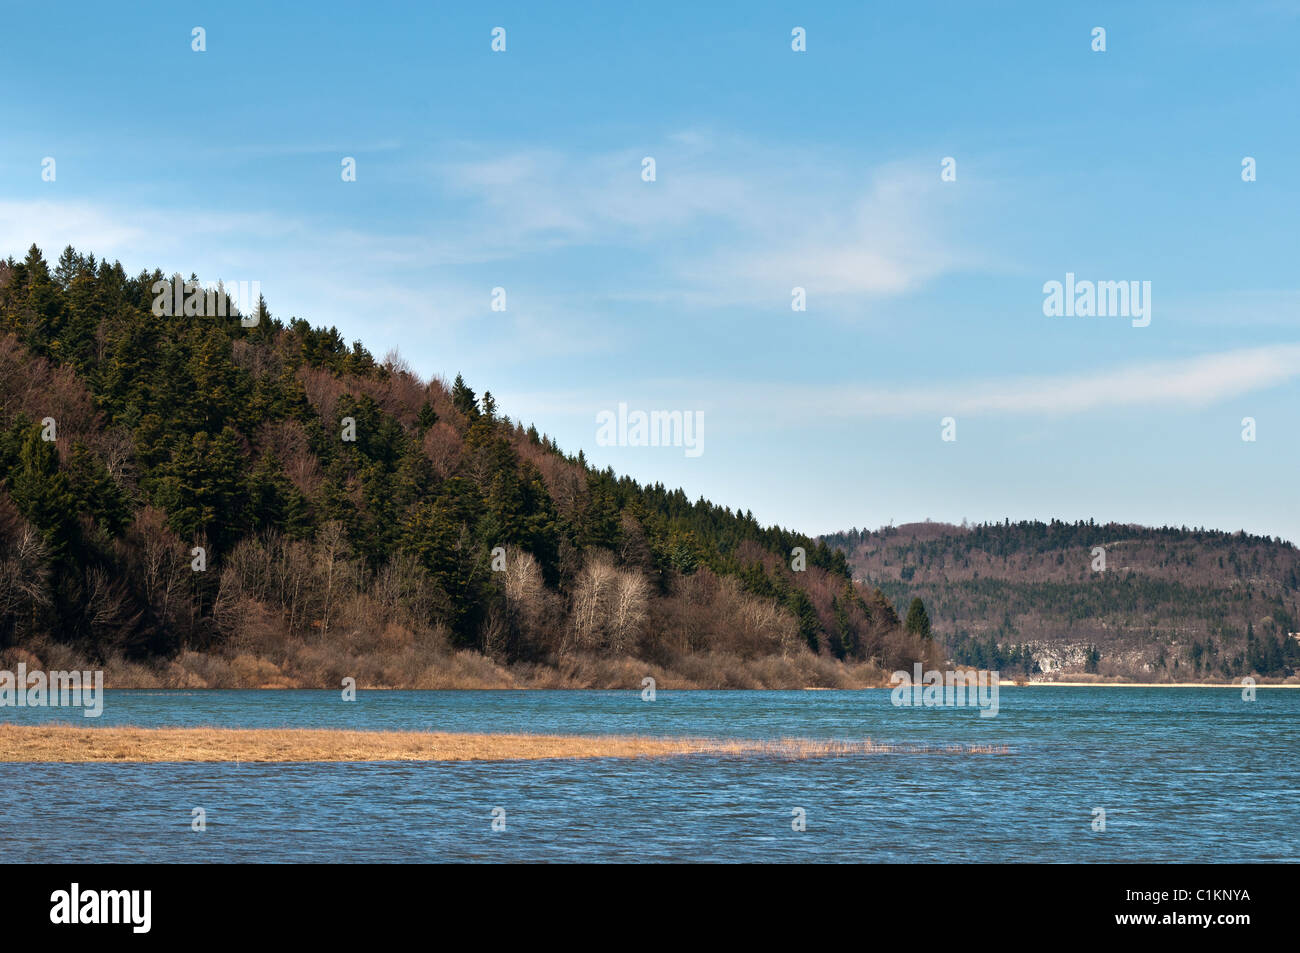 Cerknica lake, Sloveni Stock Photo